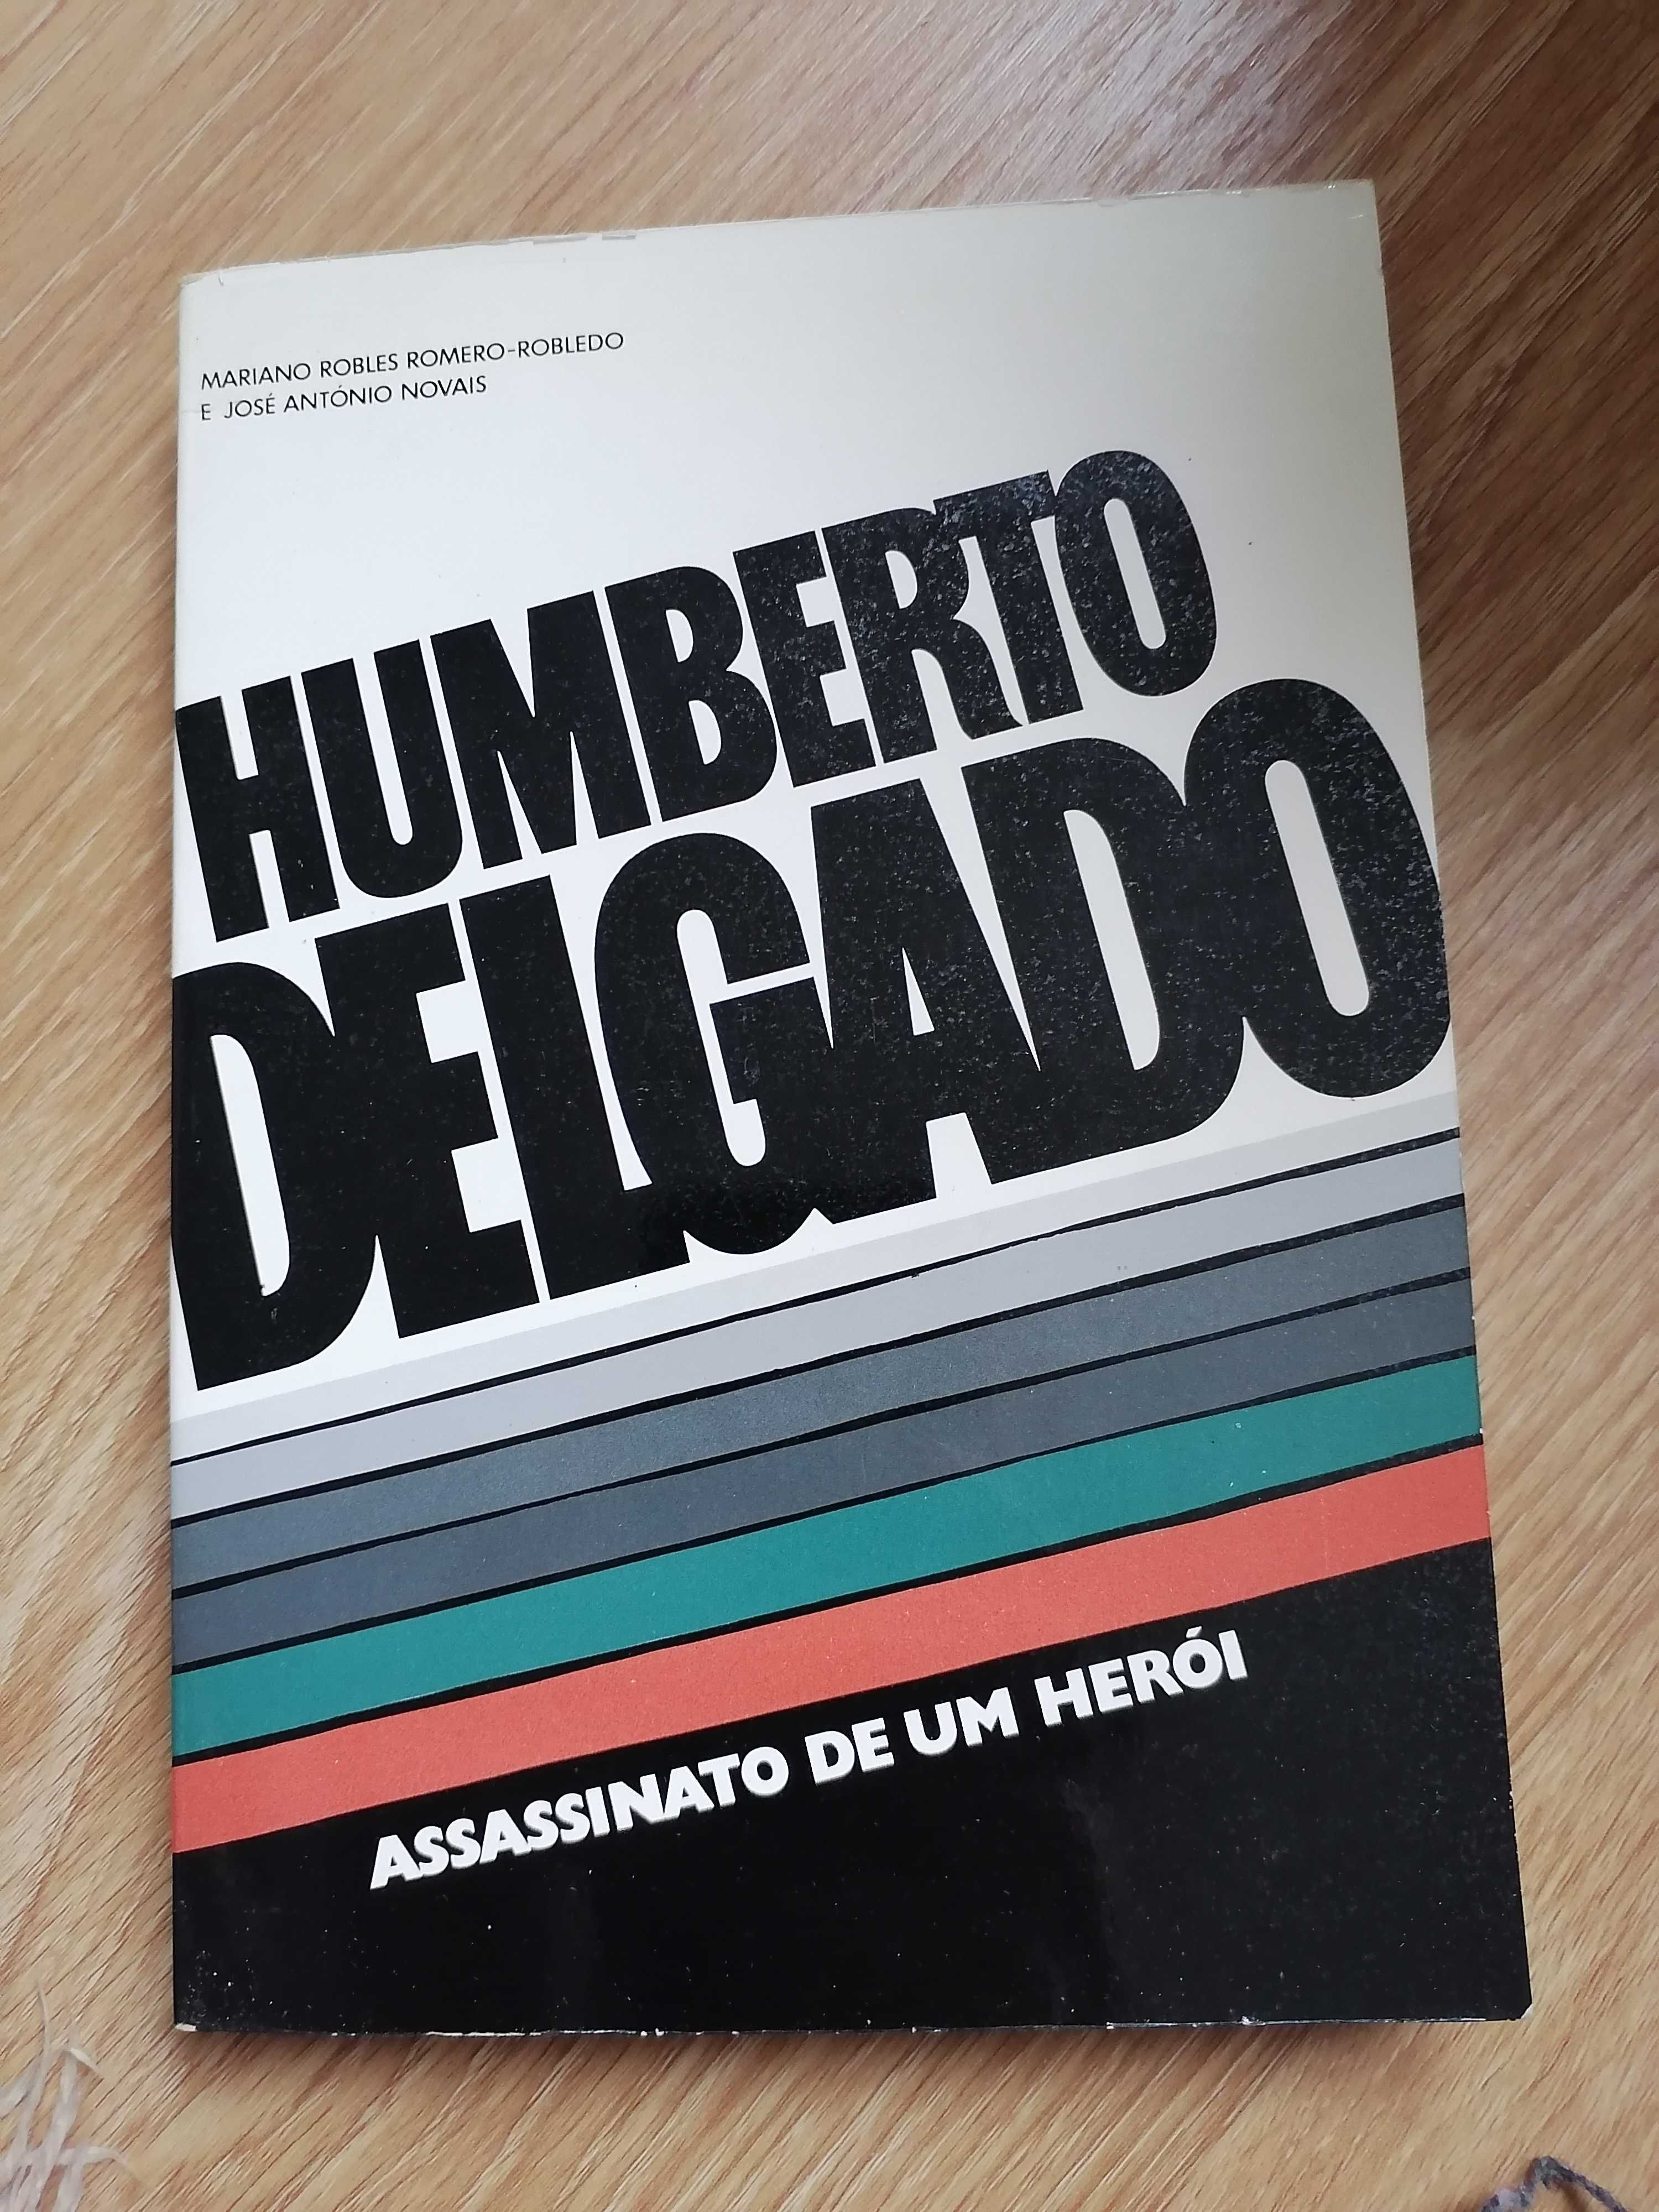 Assassinato de um herói de Humberto Delgado